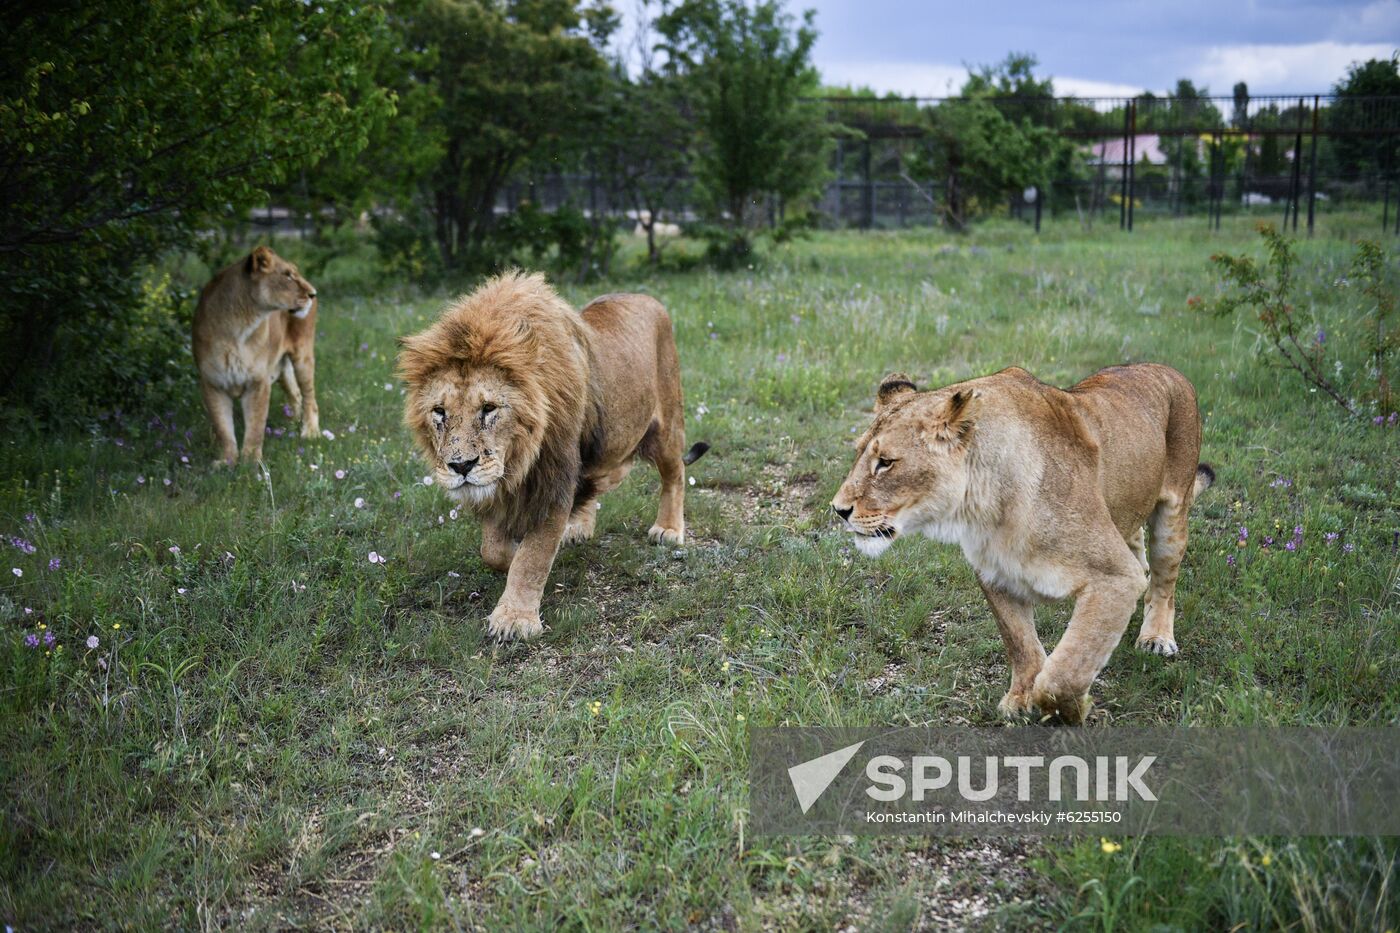 Russia Safari Park